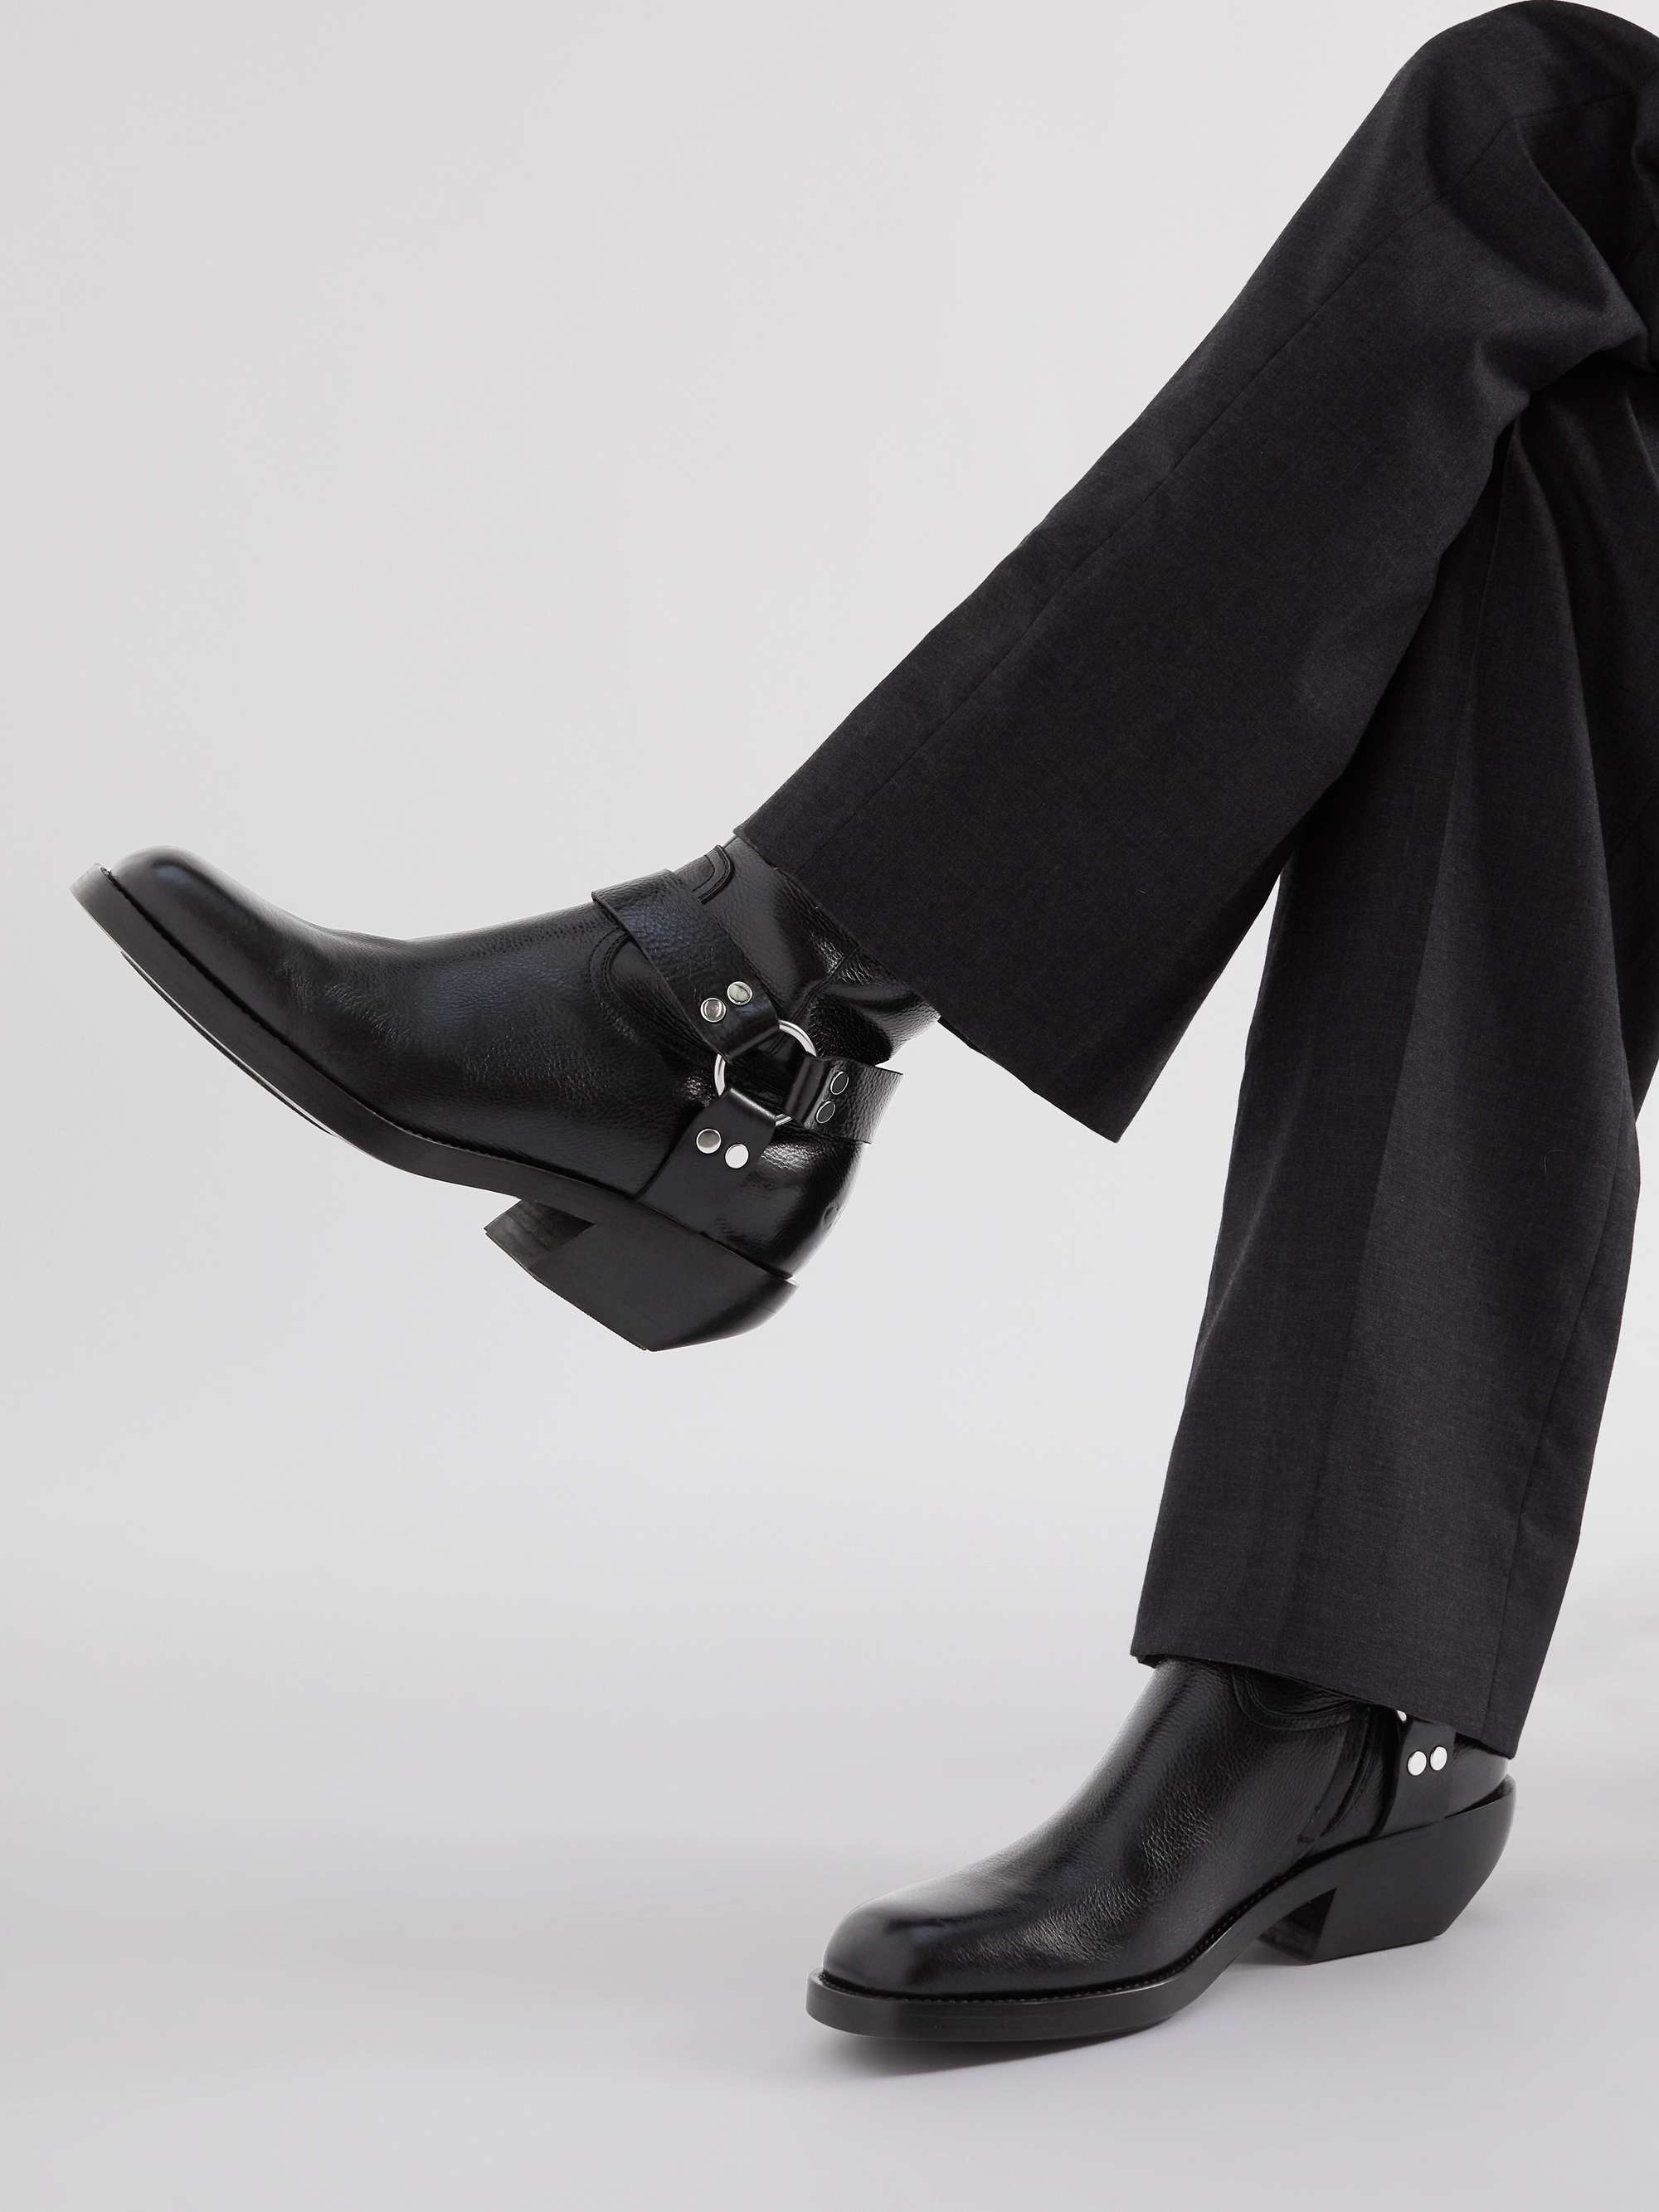 CELINE HOMME Embellished Leather Boots | MR PORTER